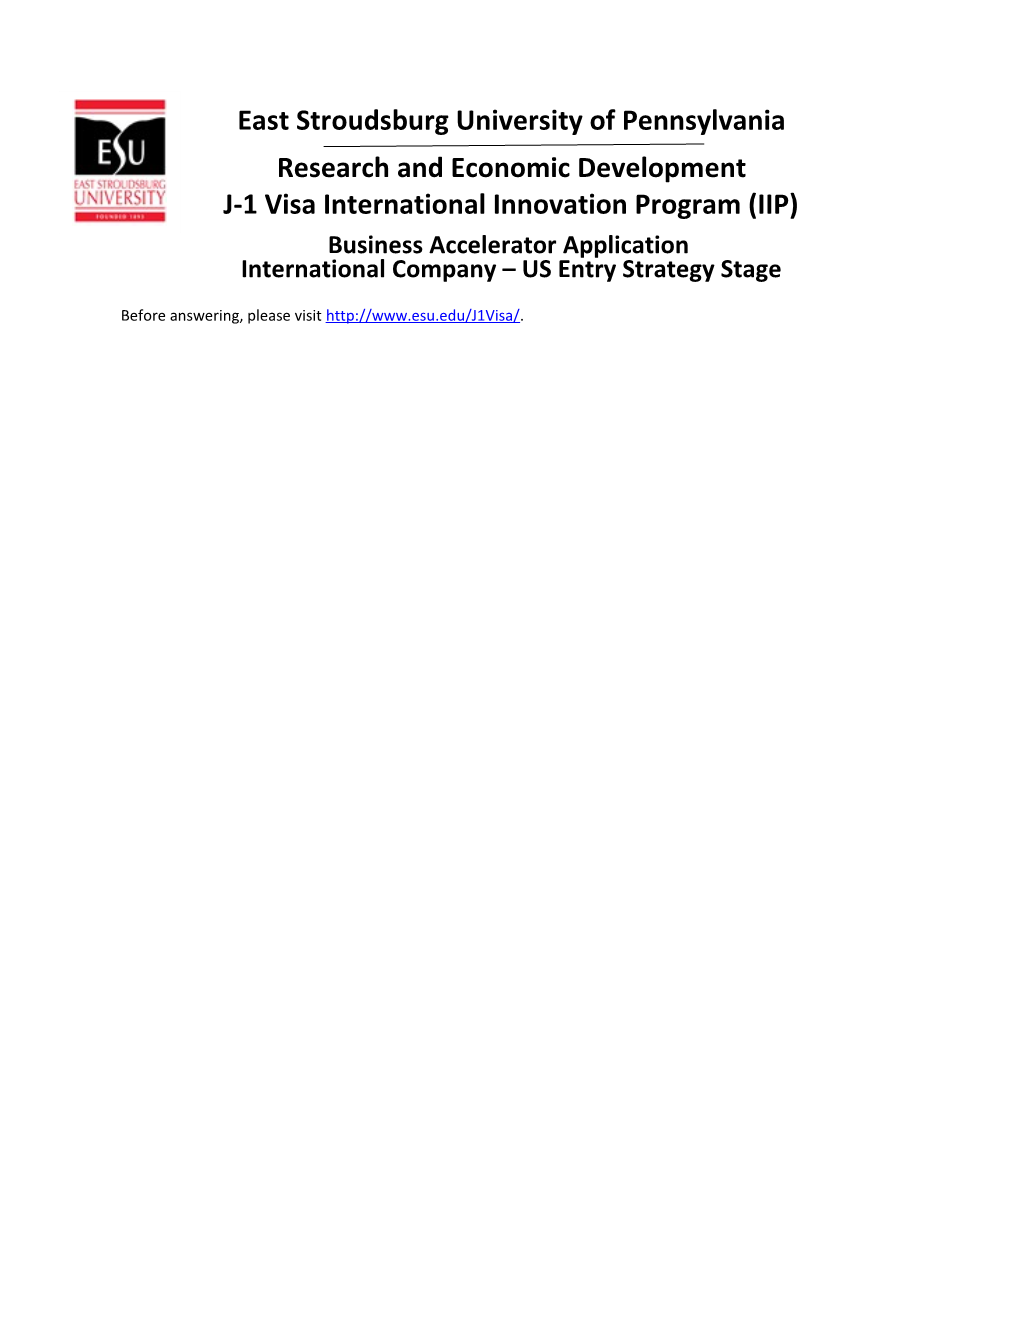 J-1 Visa International Innovation Program (IIP)